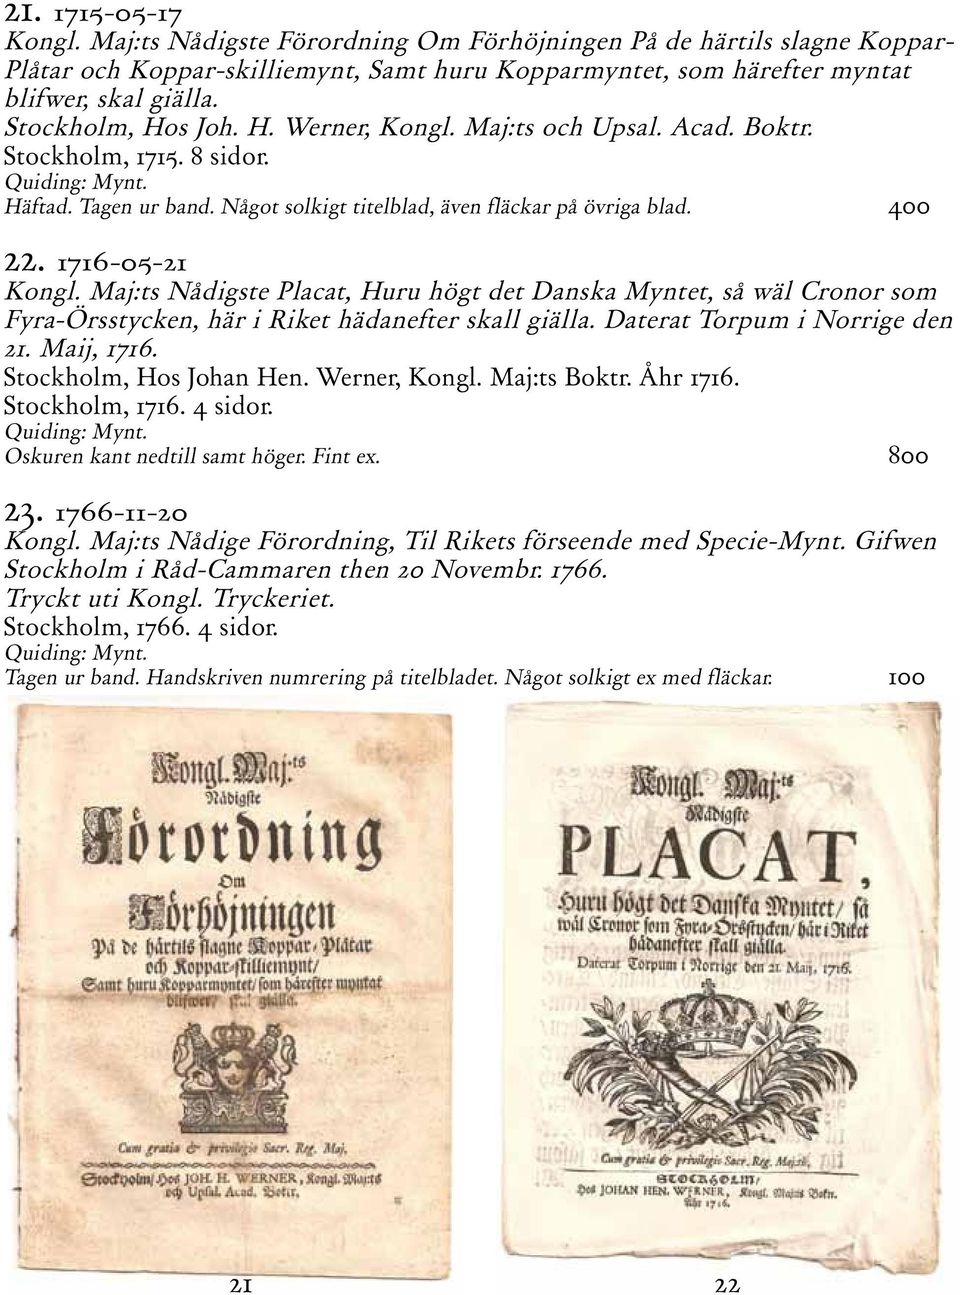 1716-05-21 Kongl. Maj:ts Nådigste Placat, Huru högt det Danska Myntet, så wäl Cronor som Fyra-Örsstycken, här i Riket hädanefter skall giälla. Daterat Torpum i Norrige den 21. Maij, 1716.